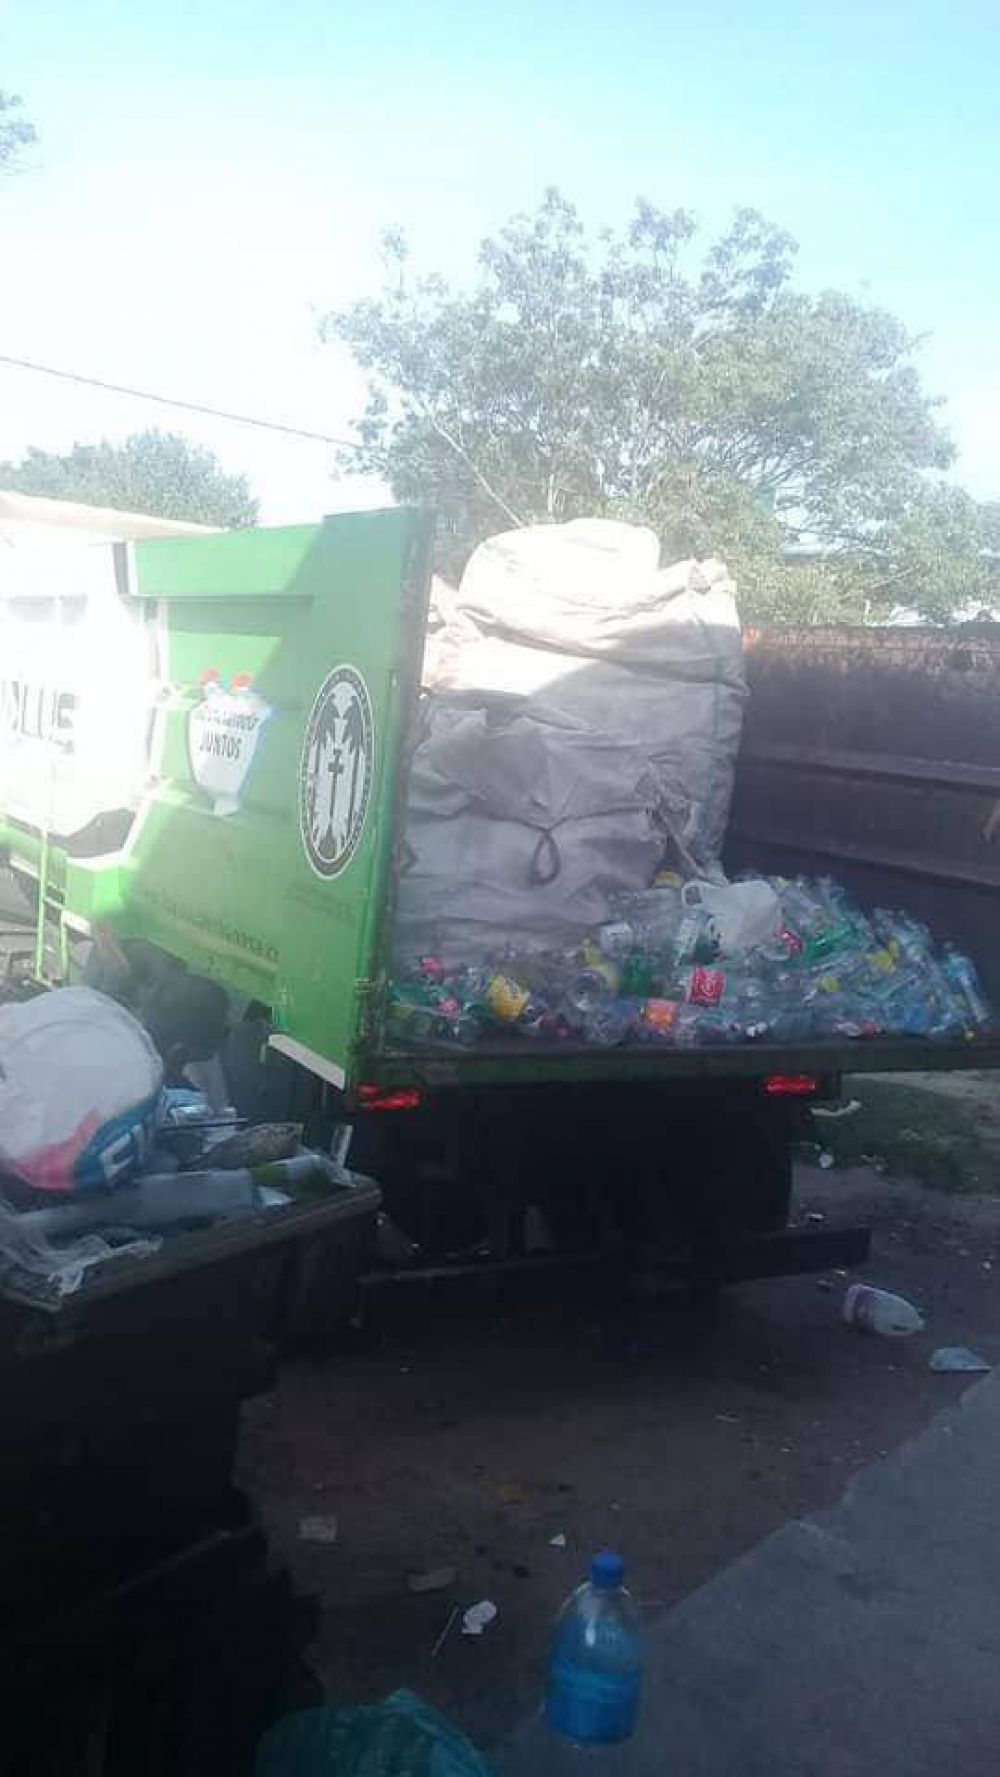 Fortaleza: recorrer la ciudad para fomentar el reciclado